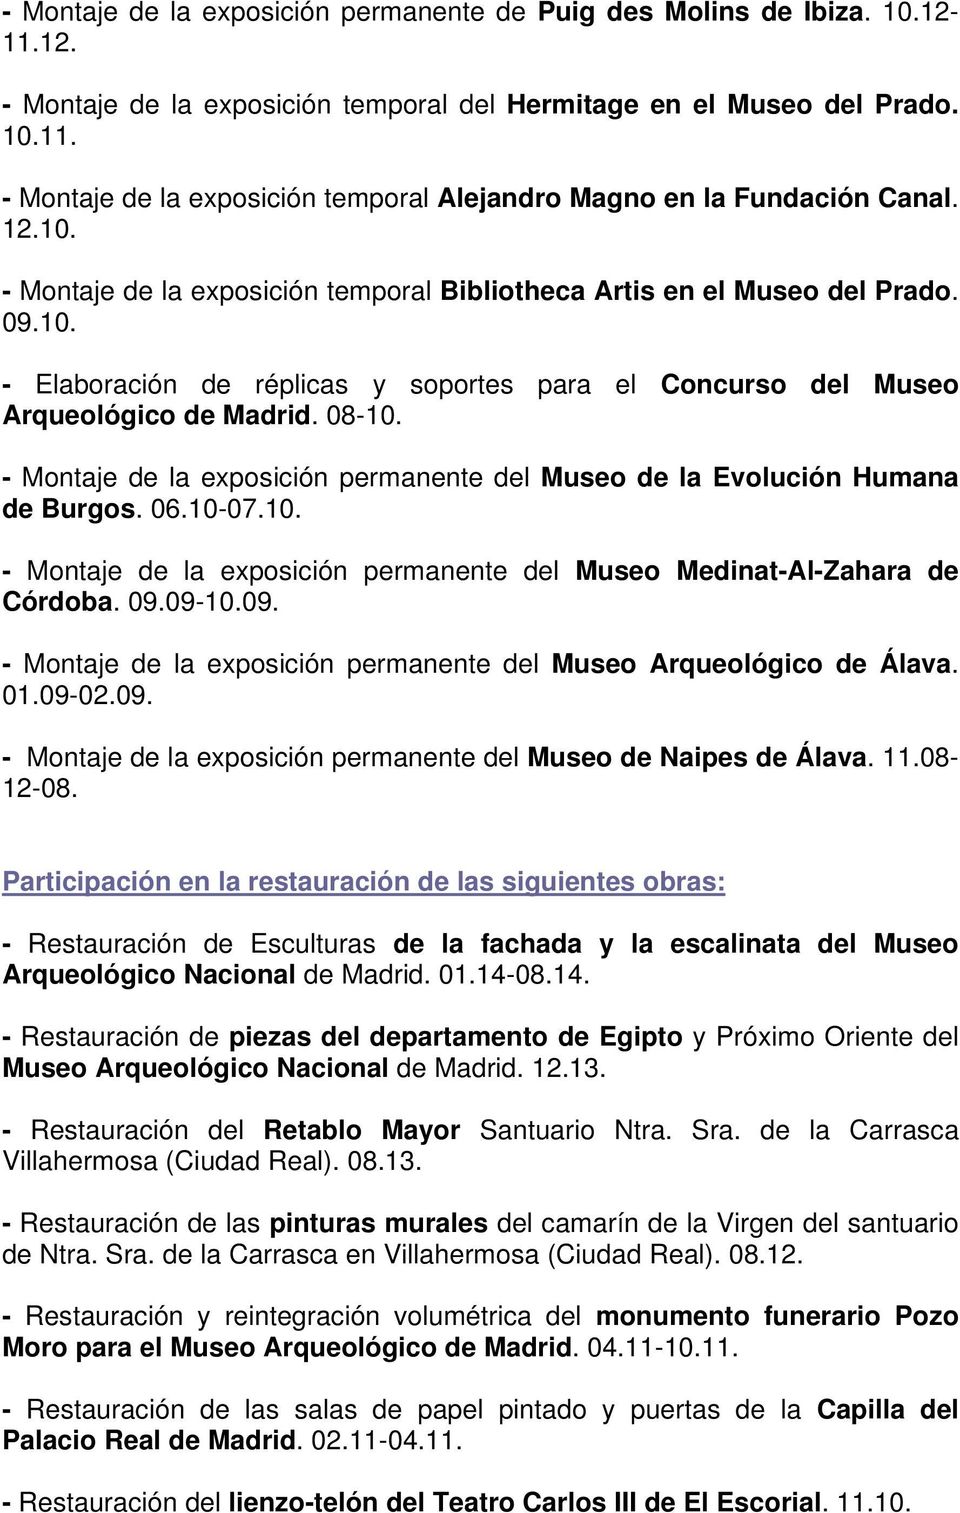 - Montaje de la exposición permanente del Museo de la Evolución Humana de Burgos. 06.10-07.10. - Montaje de la exposición permanente del Museo Medinat-Al-Zahara de Córdoba. 09.